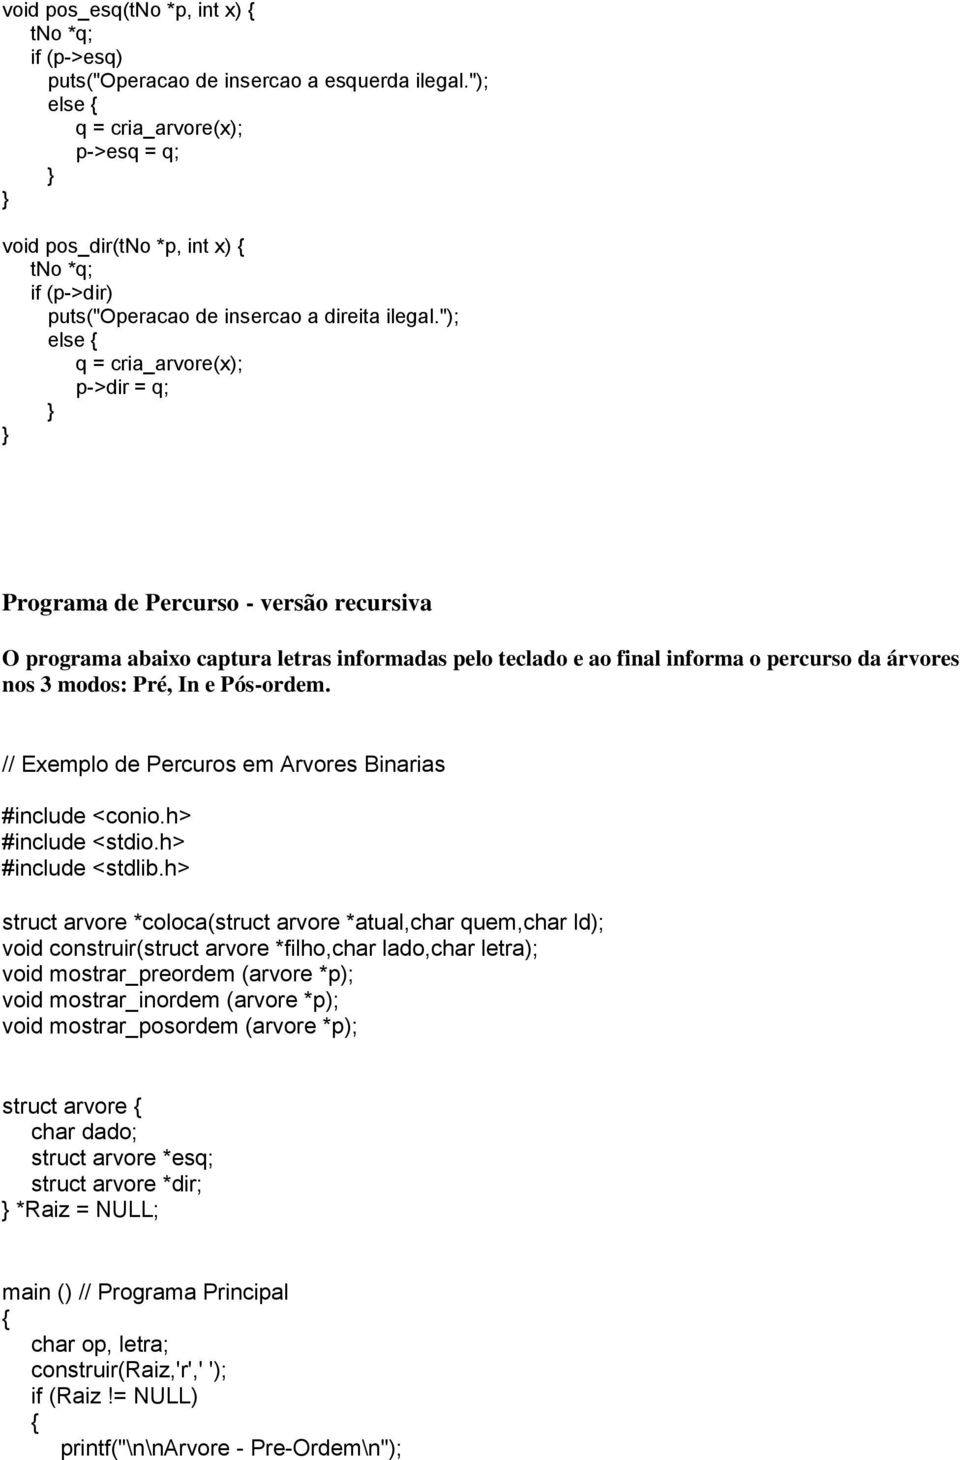 "); q = cria_arvore(x); p->dir = q; Programa de Percurso - versão recursiva O programa abaixo captura letras informadas pelo teclado e ao final informa o percurso da árvores nos 3 modos: Pré, In e